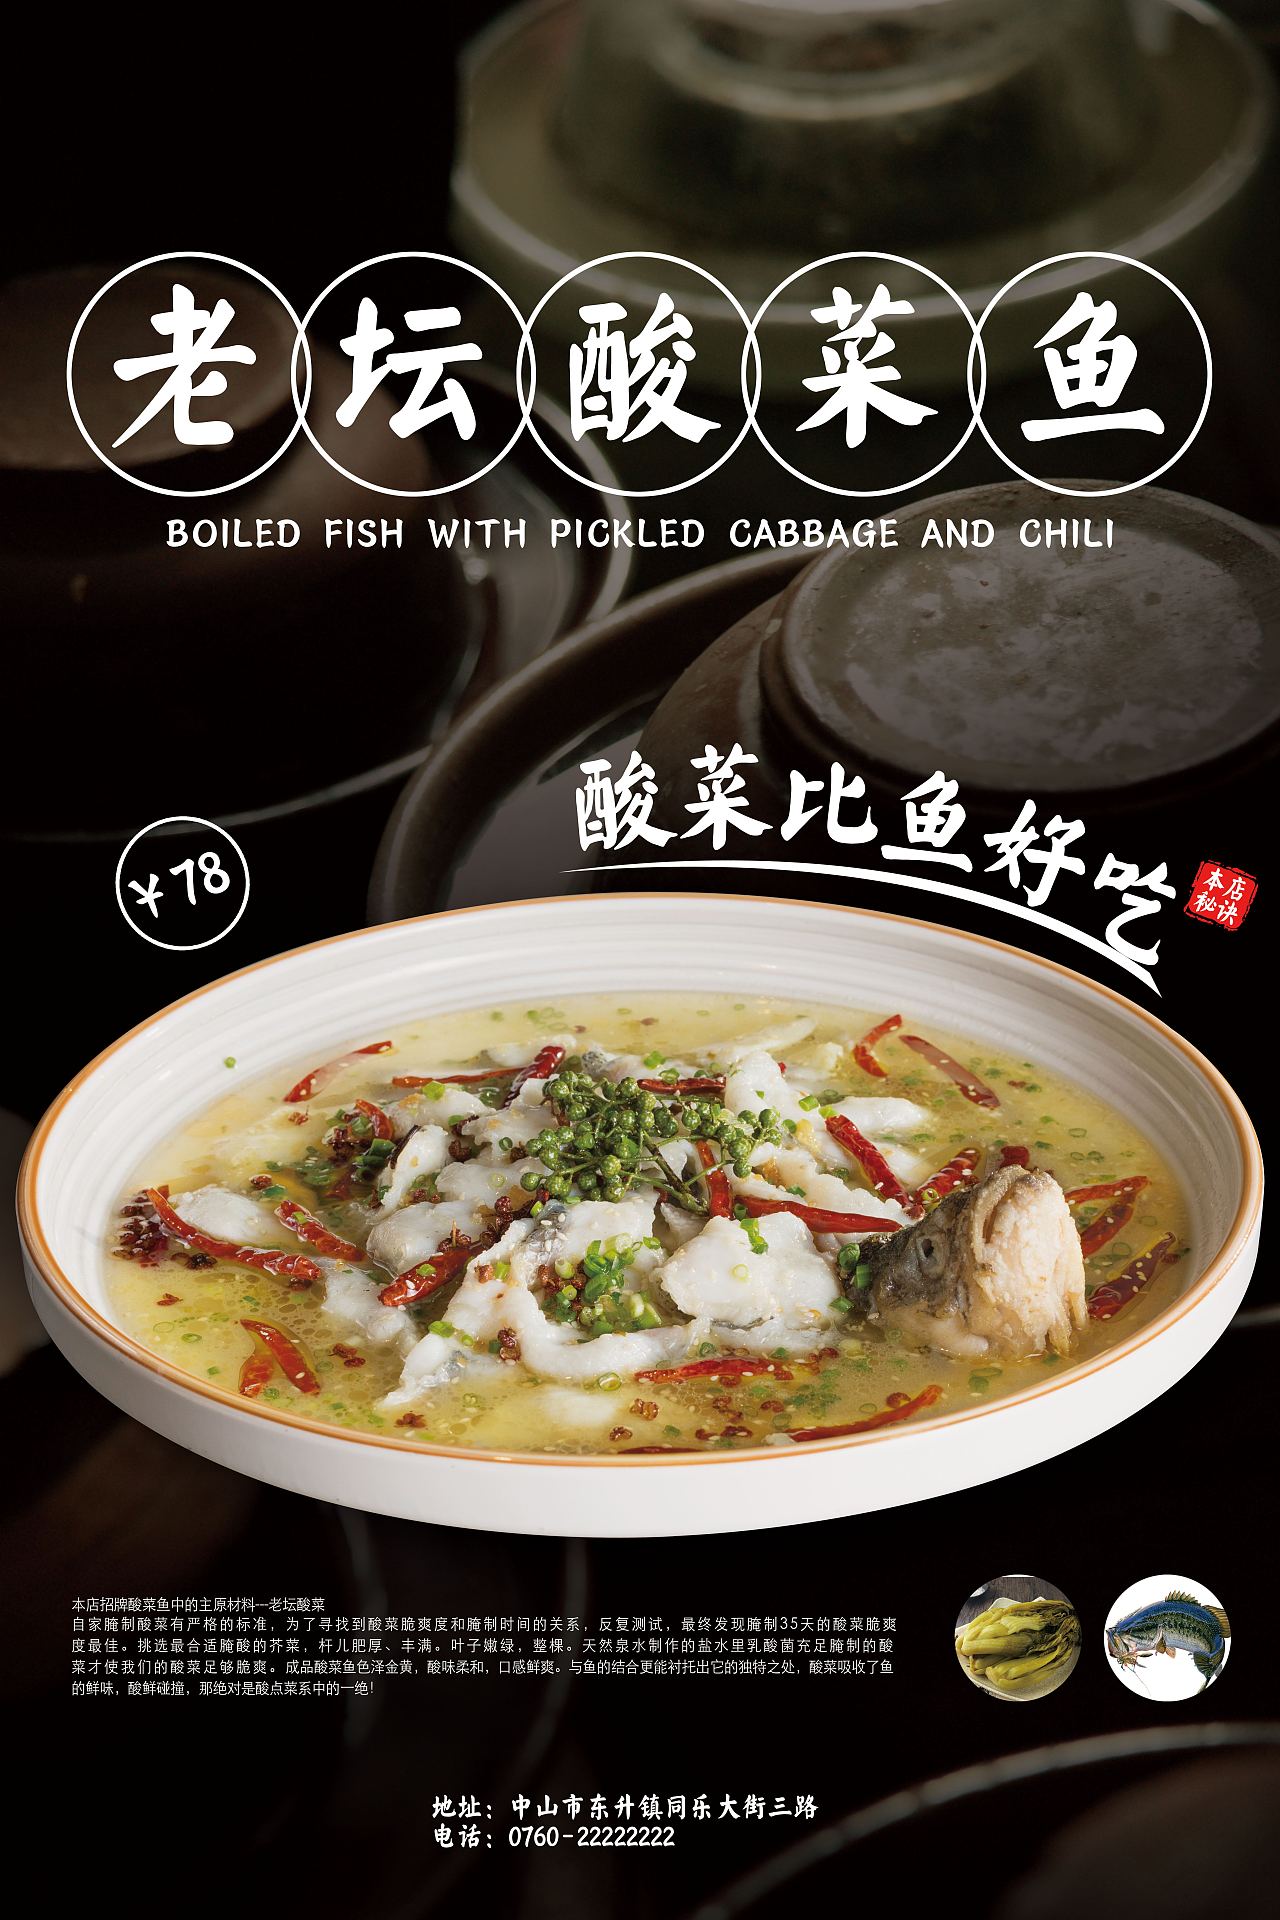 好吃的酸菜鱼 上海哪里找？ - 知乎